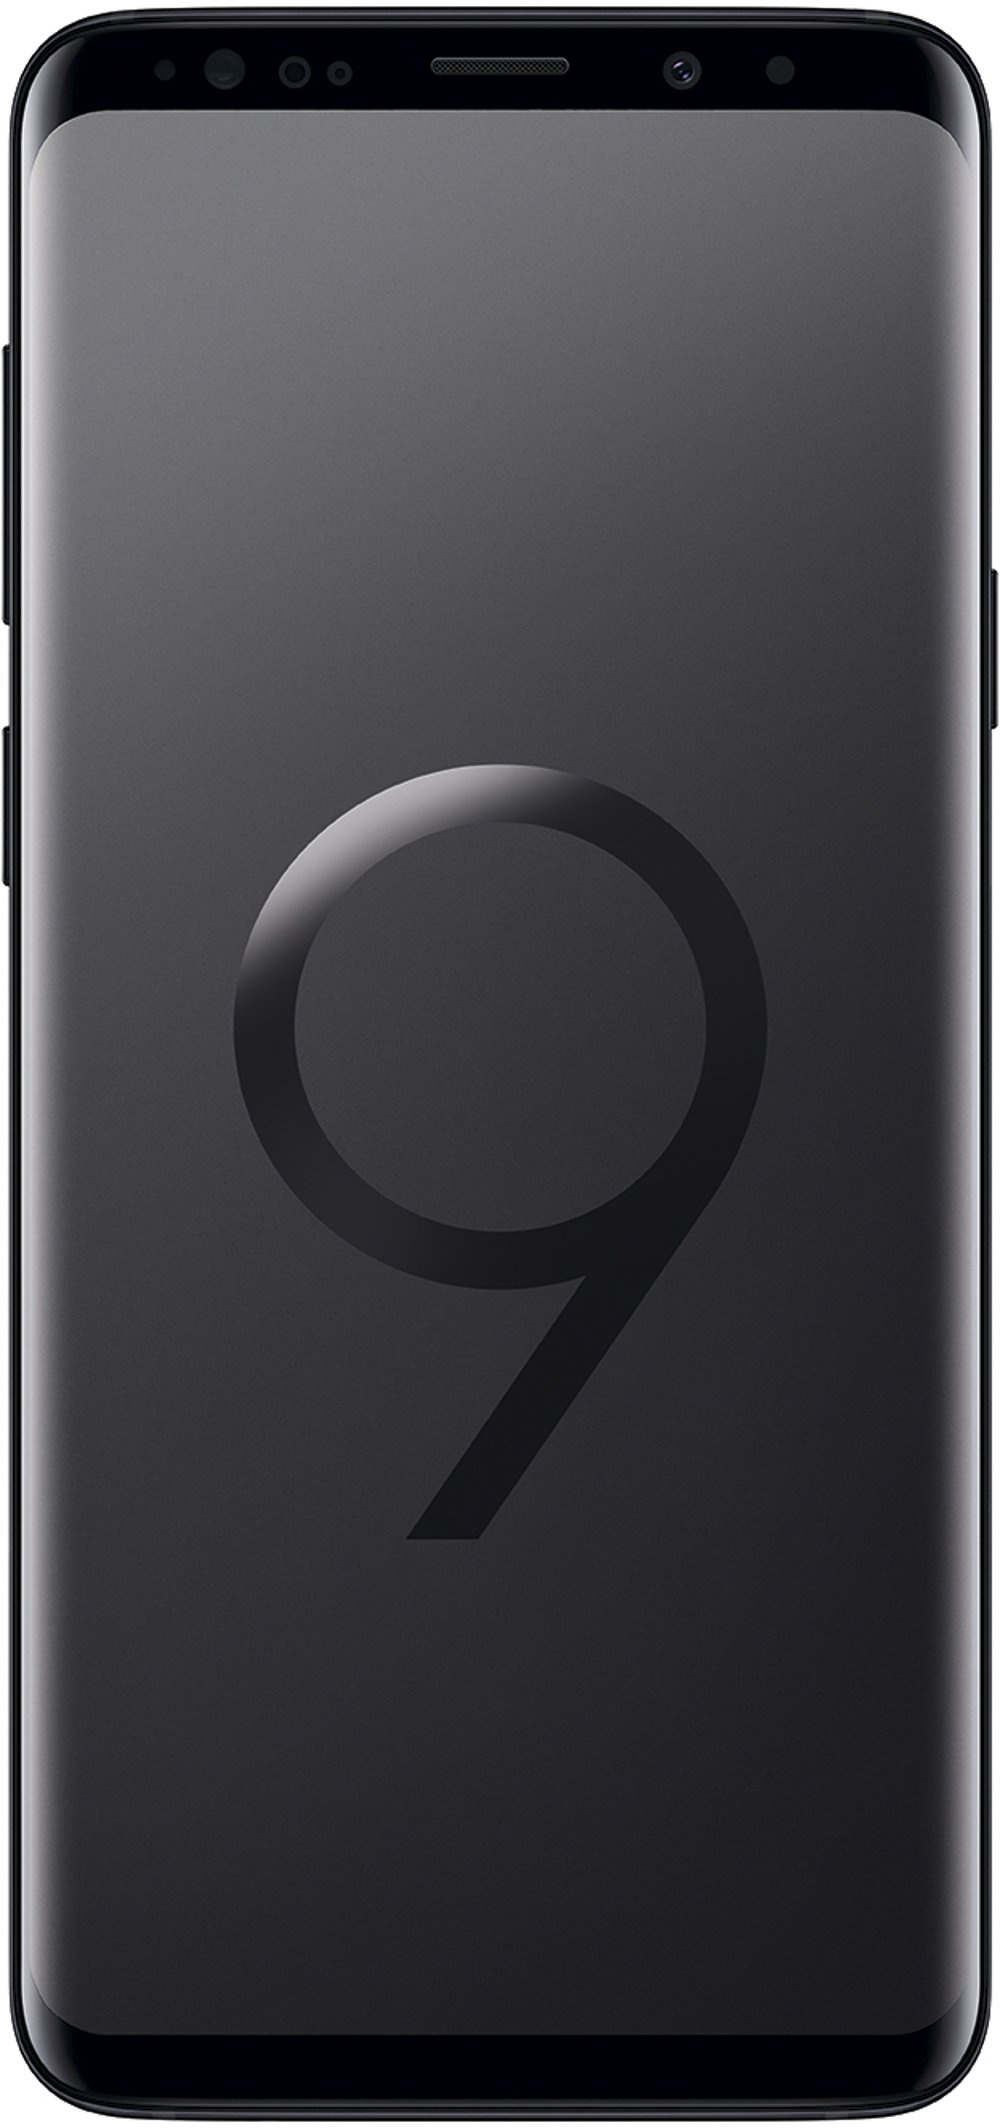 Samsung Galaxy S9 PLUS Smartphone (5,8 Zoll Touch-Display, 128GB interner Speicher, Android, Dual SIM) Midgnight Black – Internationale Versionen